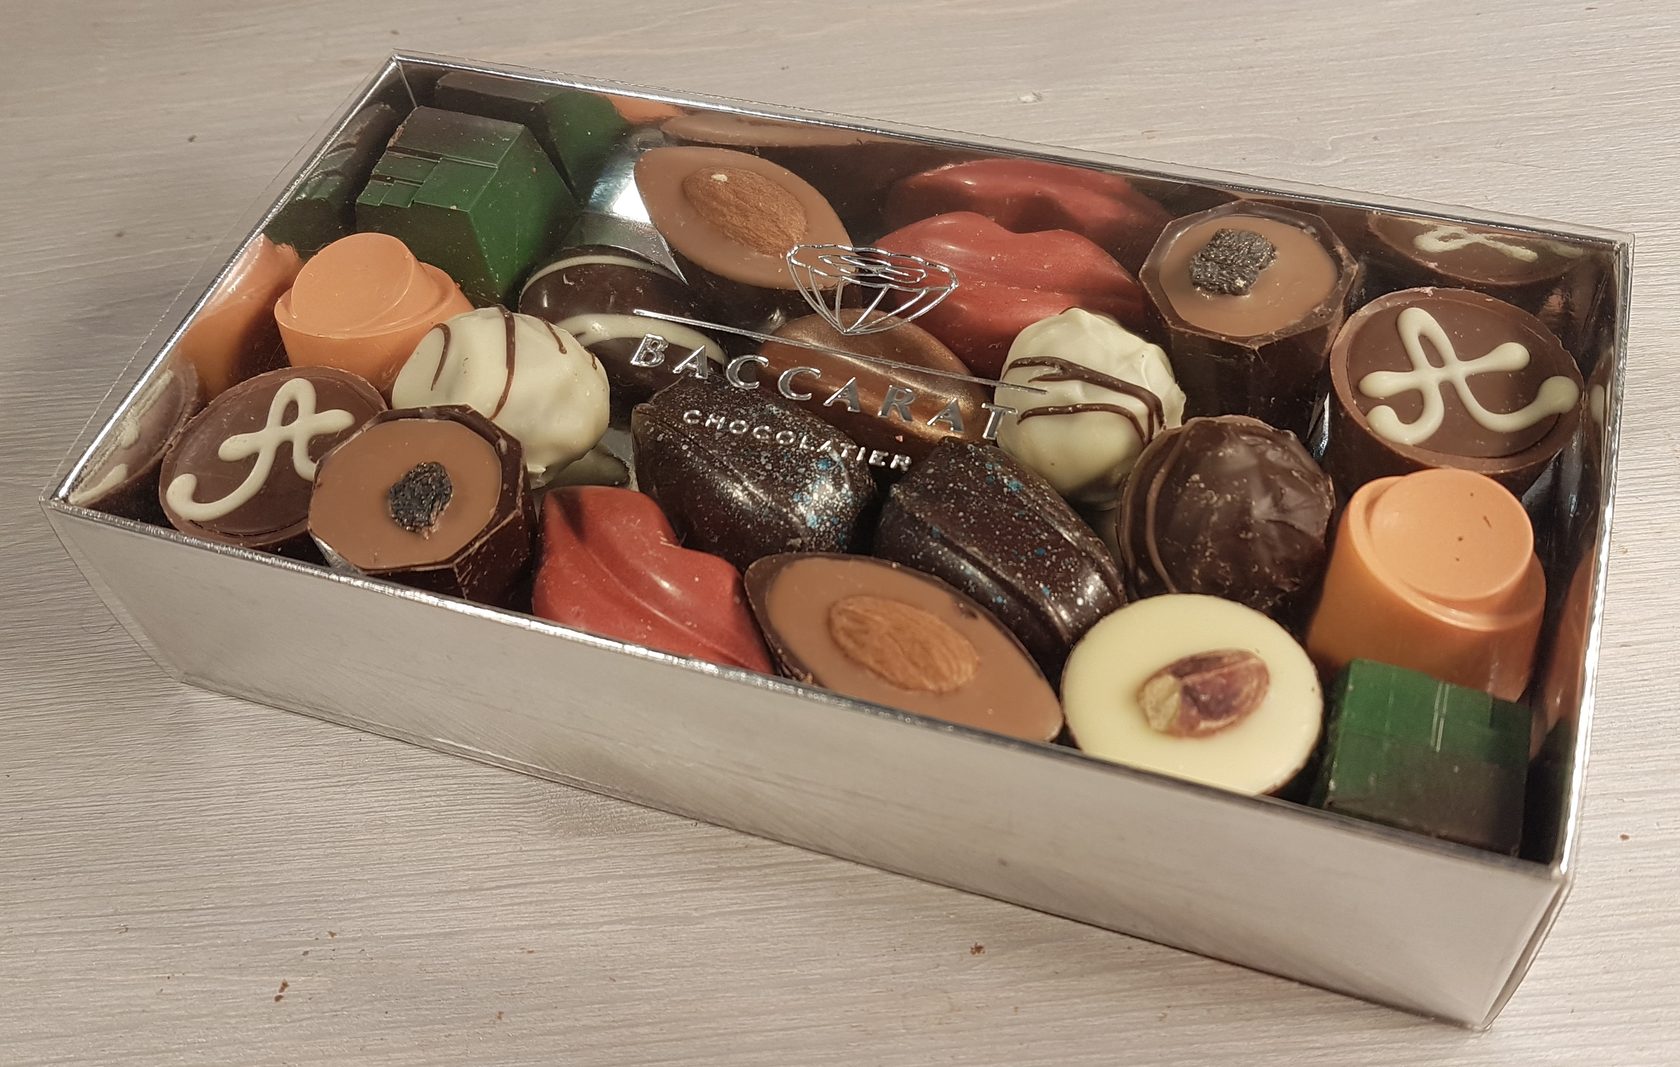 Купить шоколад спб авито. Бельгийский шоколад. Бельгийский шоколад в коробке. Набор бельгийского шоколада. Бельгийский шоколад ракушки.